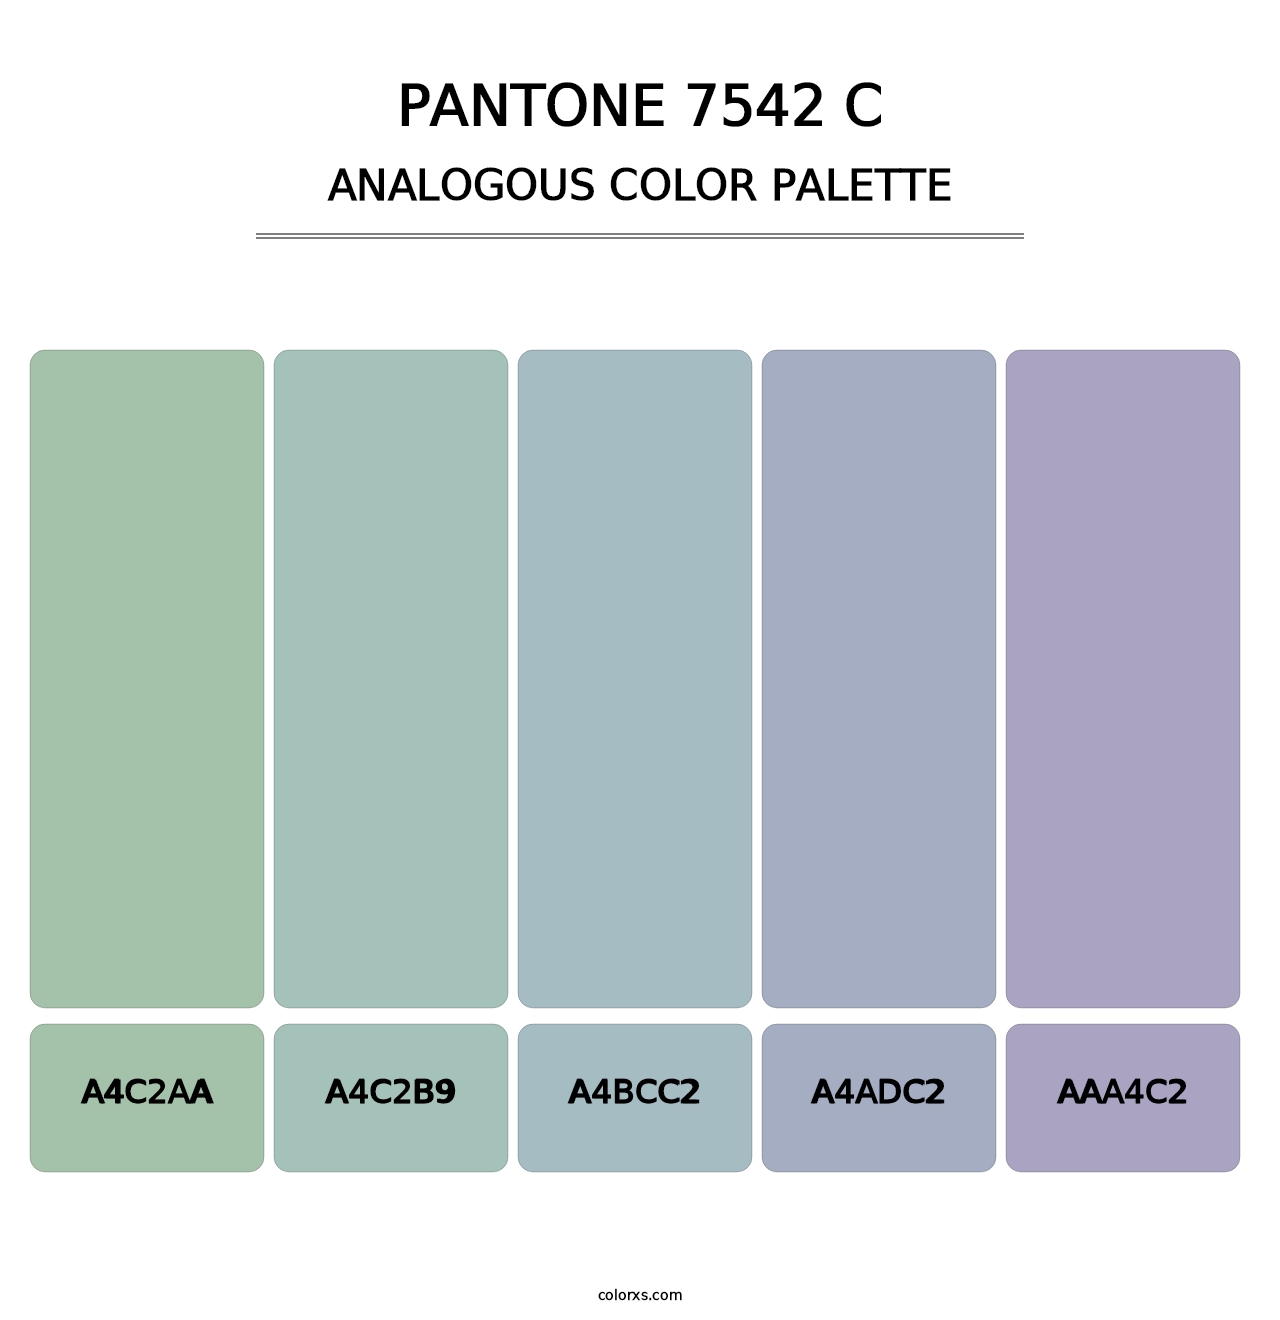 PANTONE 7542 C - Analogous Color Palette